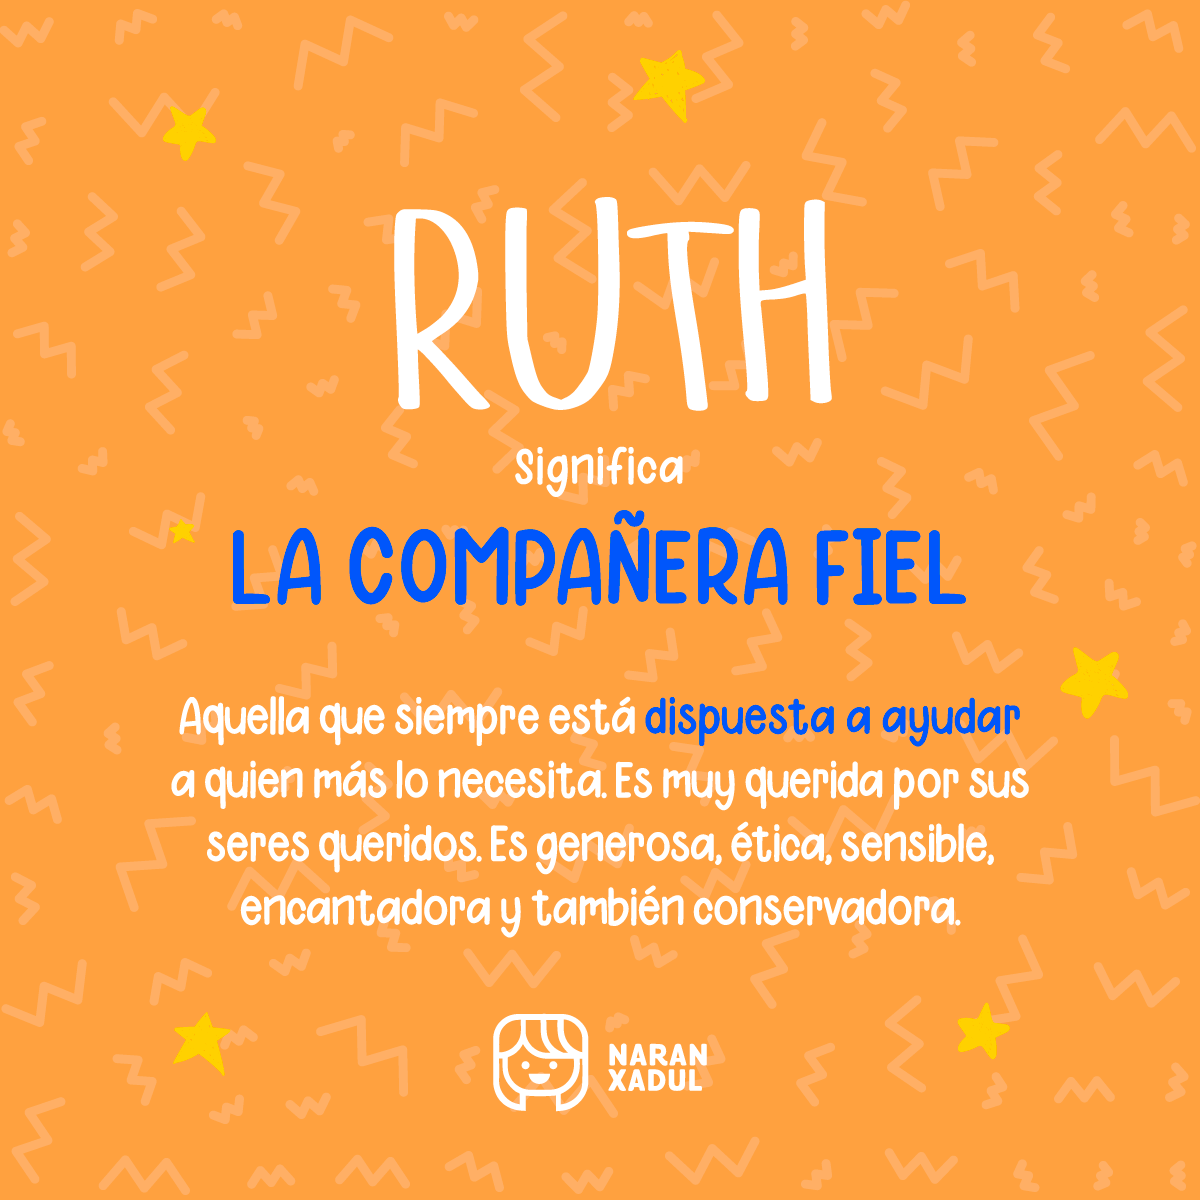 Significado de Ruth